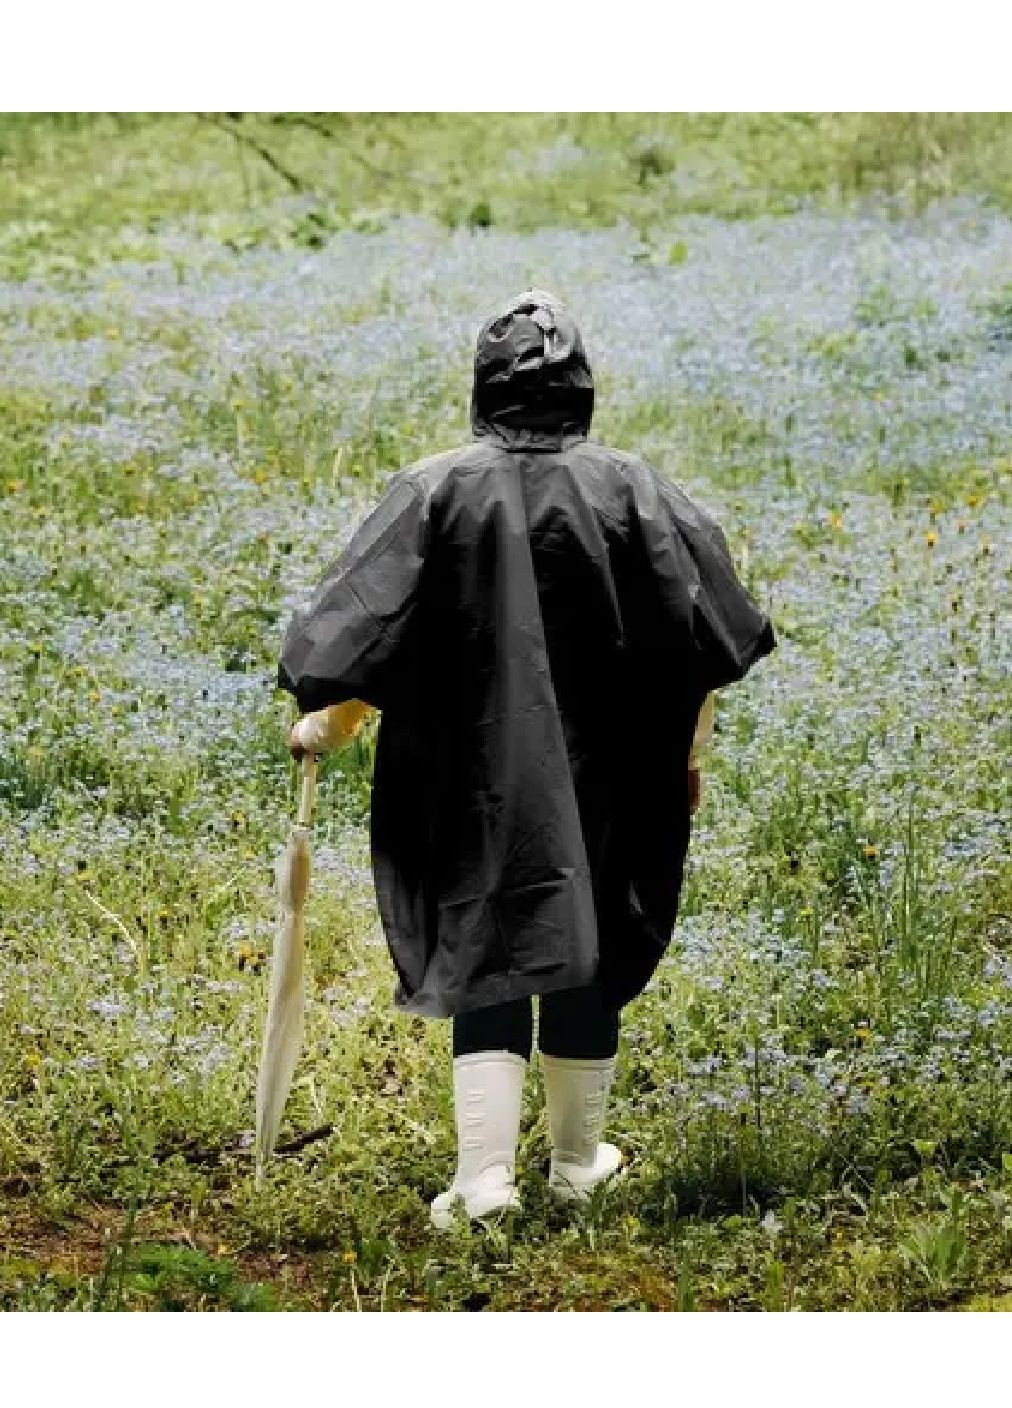 Дождевик плащ пончо с капюшоном чехлом футляром защита от дождя для детей взрослых 130х115 см (476849-Prob) Черный Unbranded (291984586)